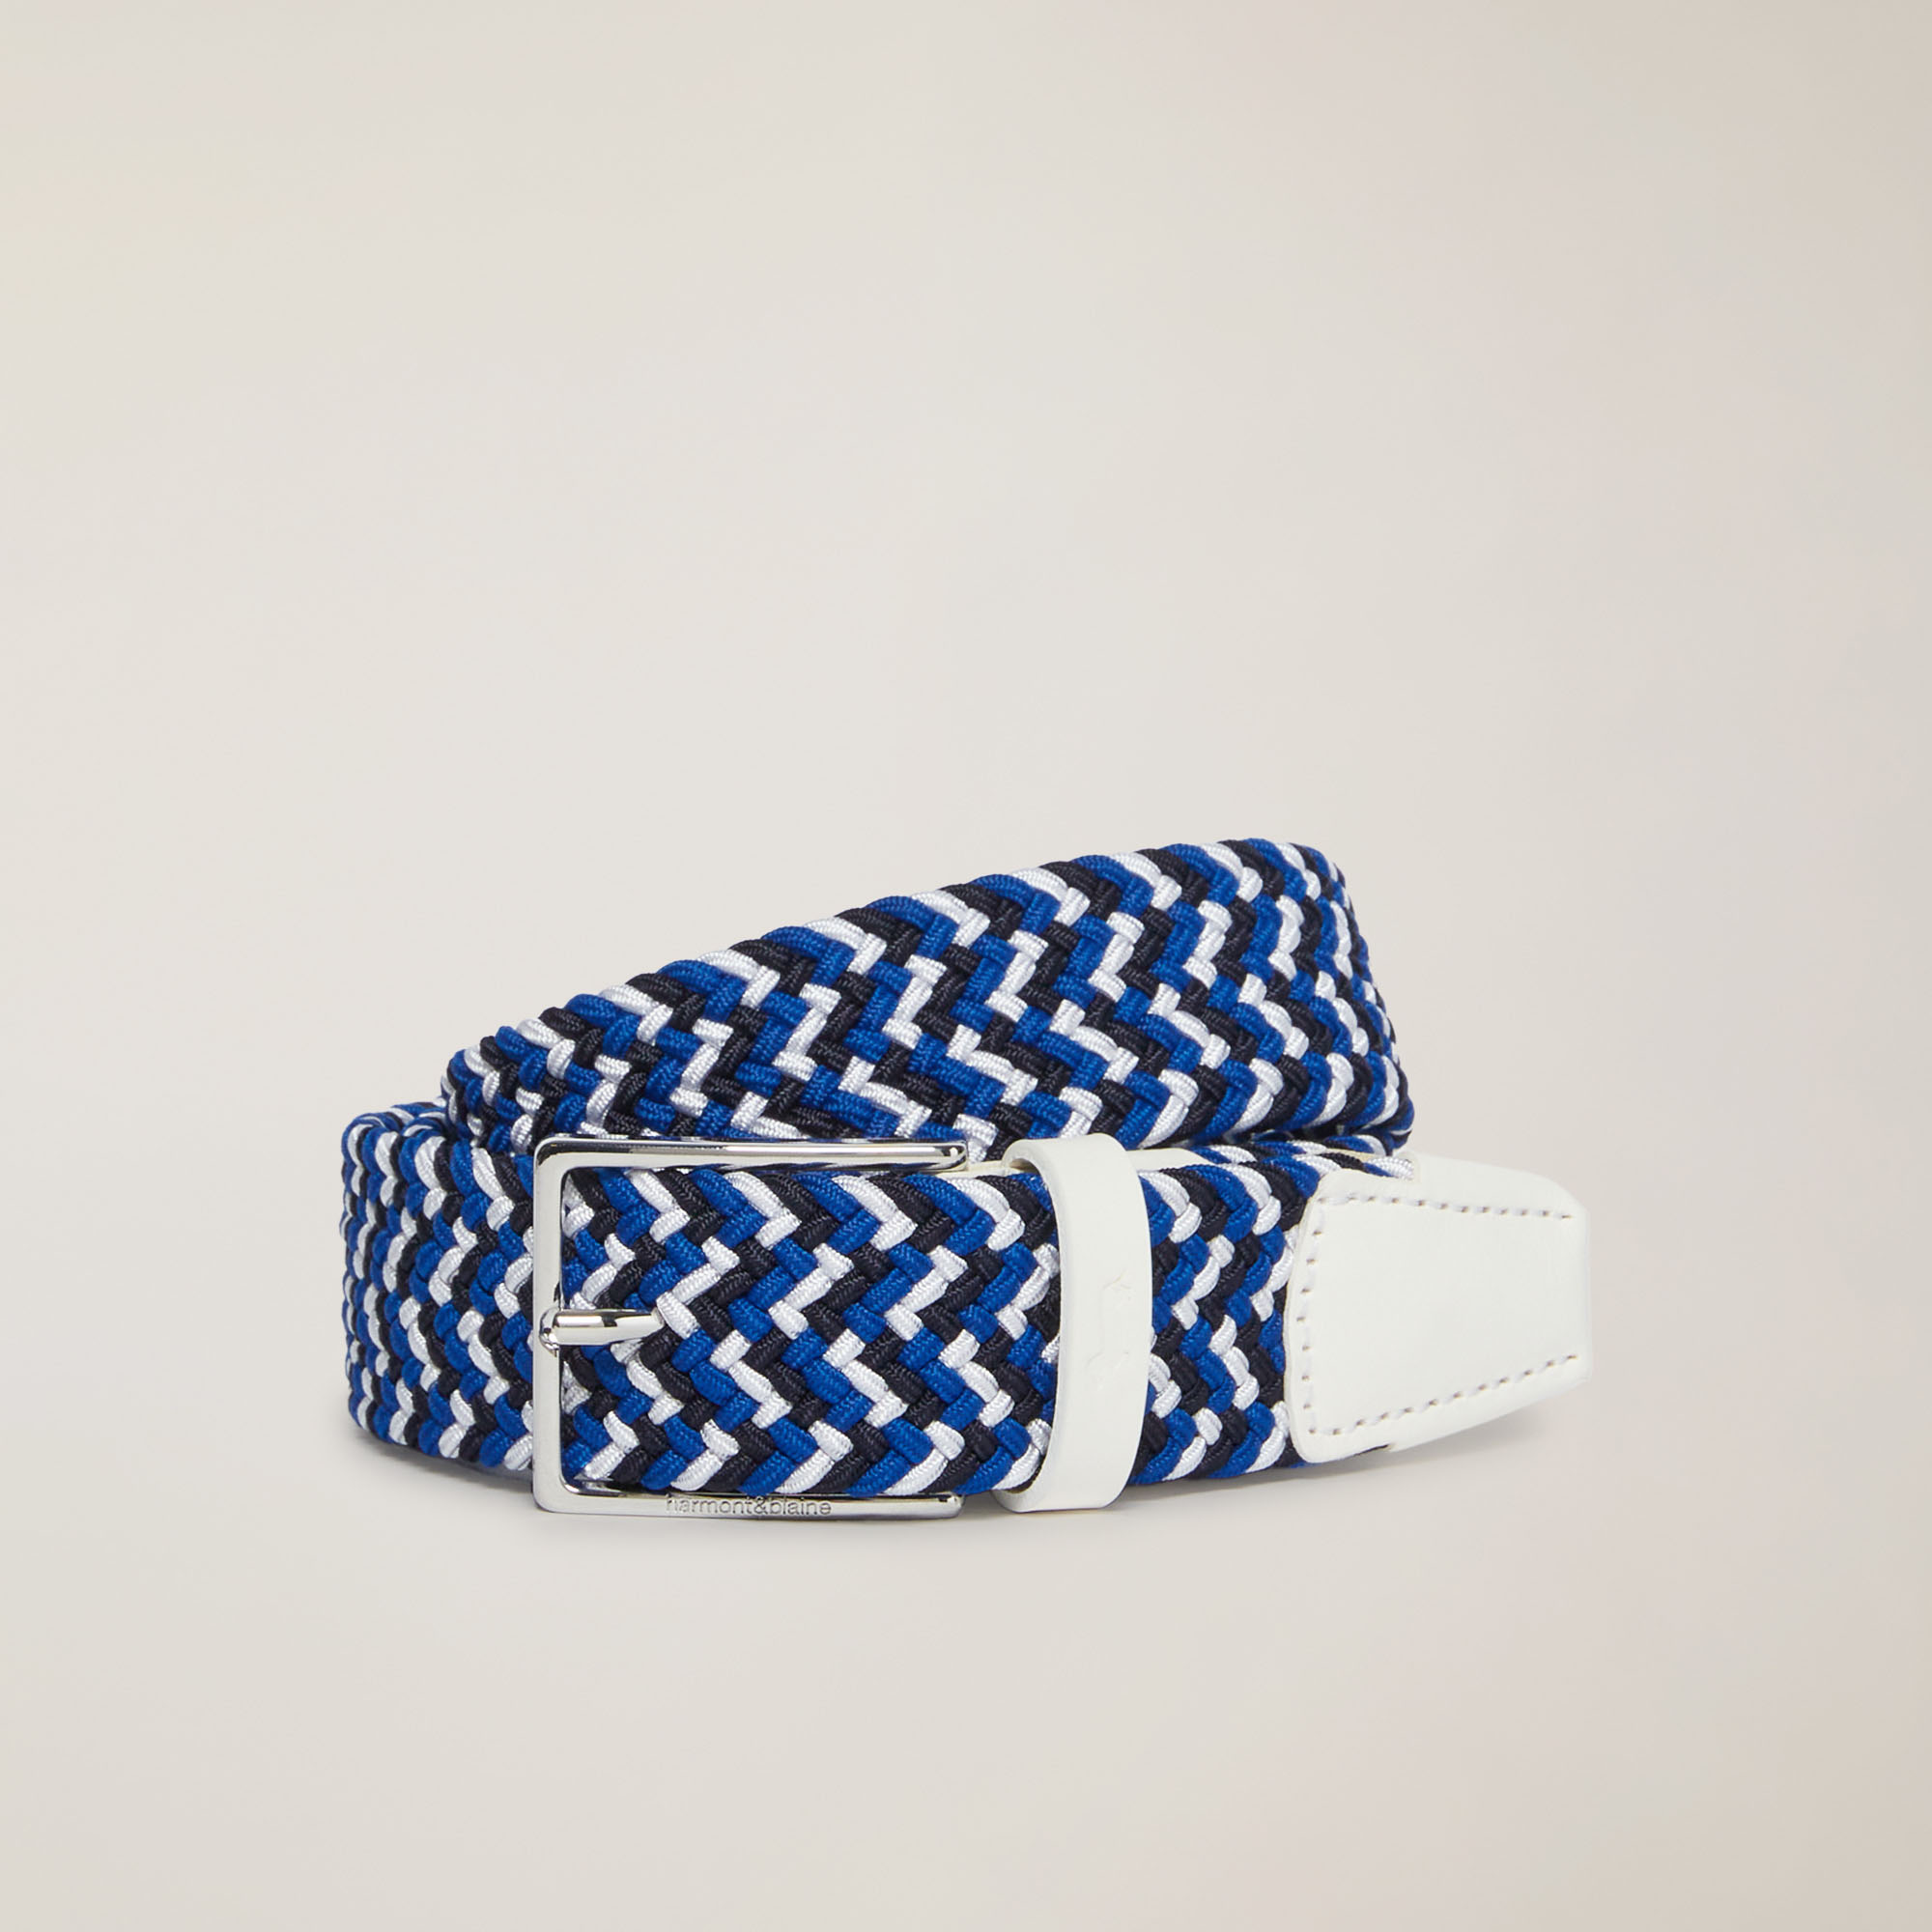 Multicolor Woven Belt, White / Blue, large